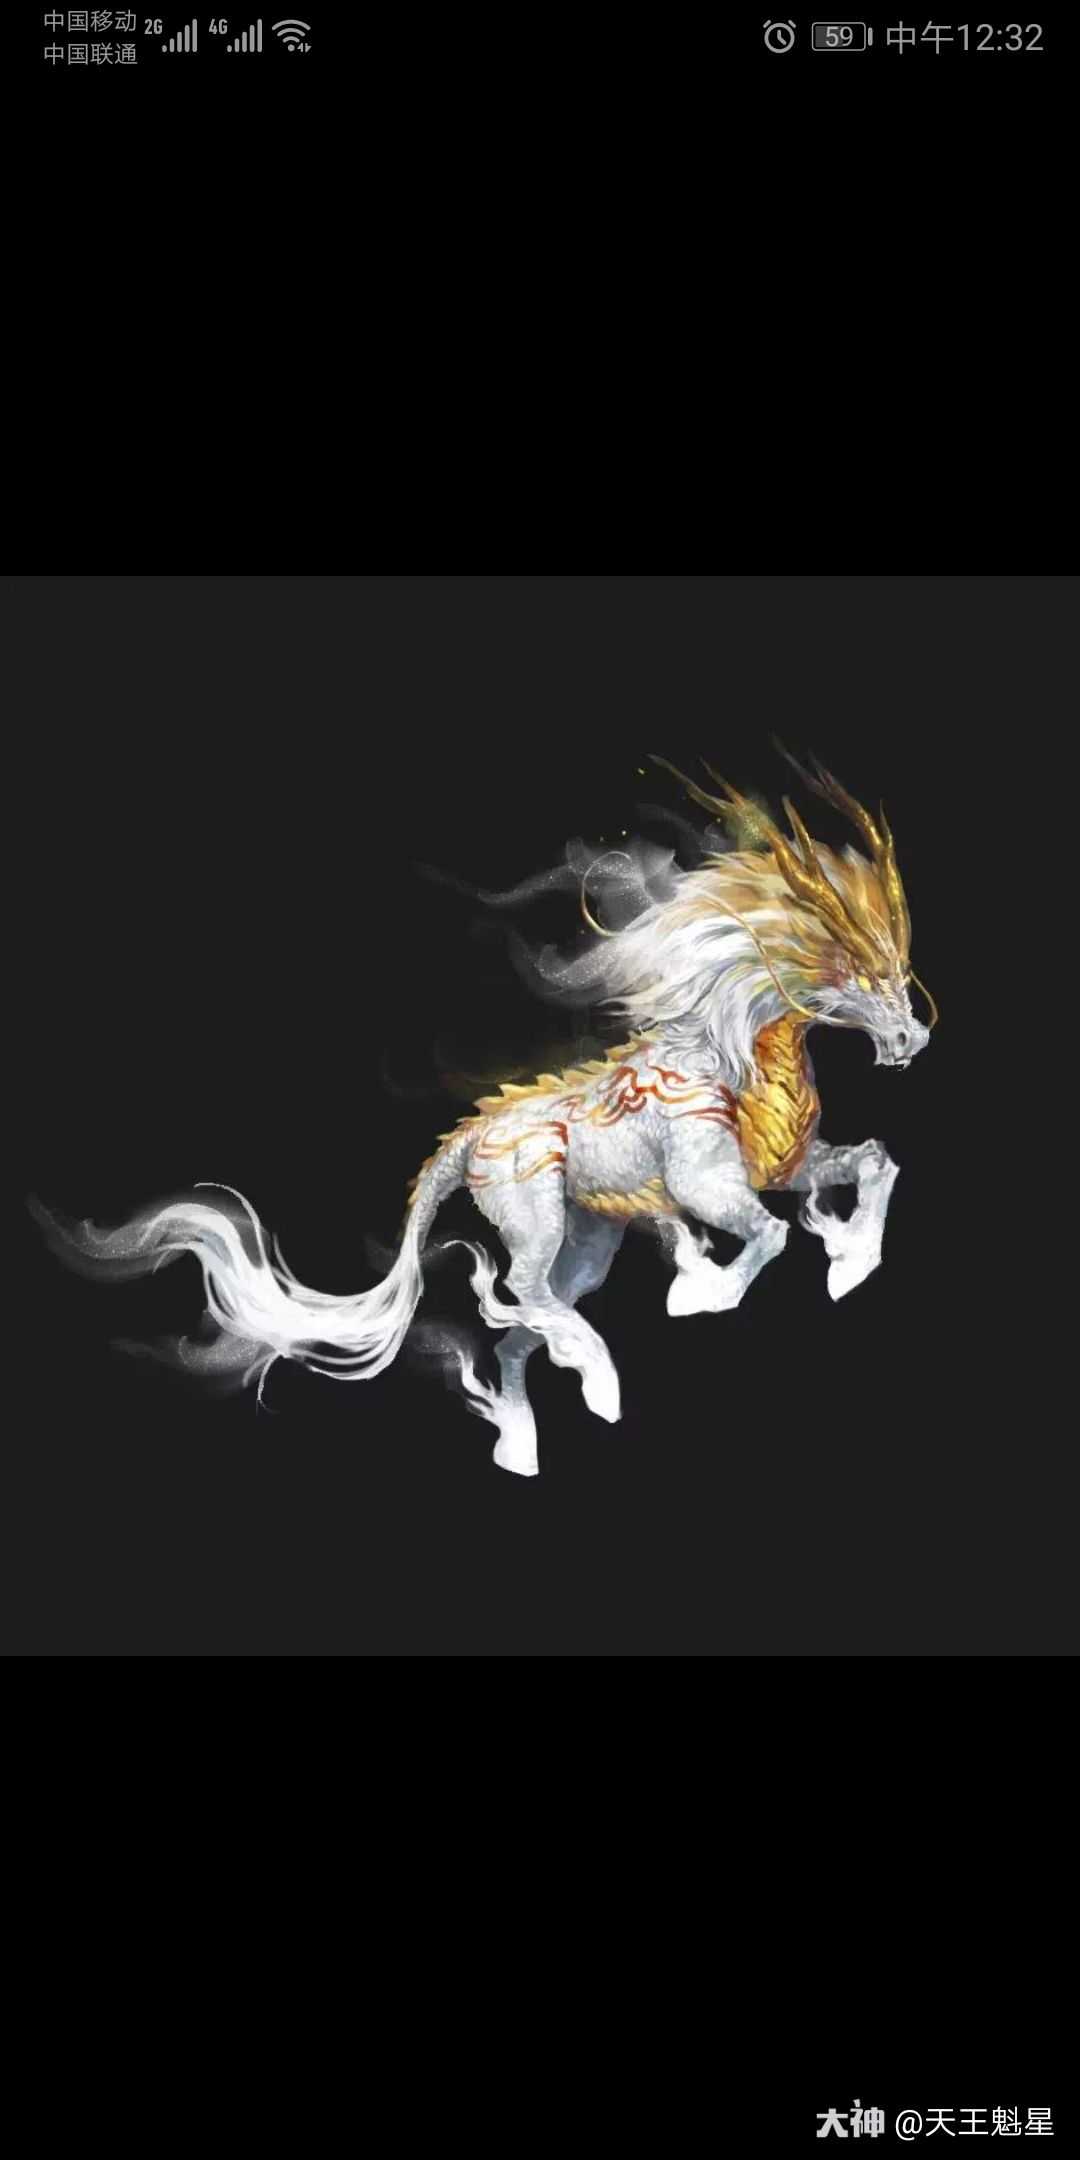 Лунма лошадь дракон